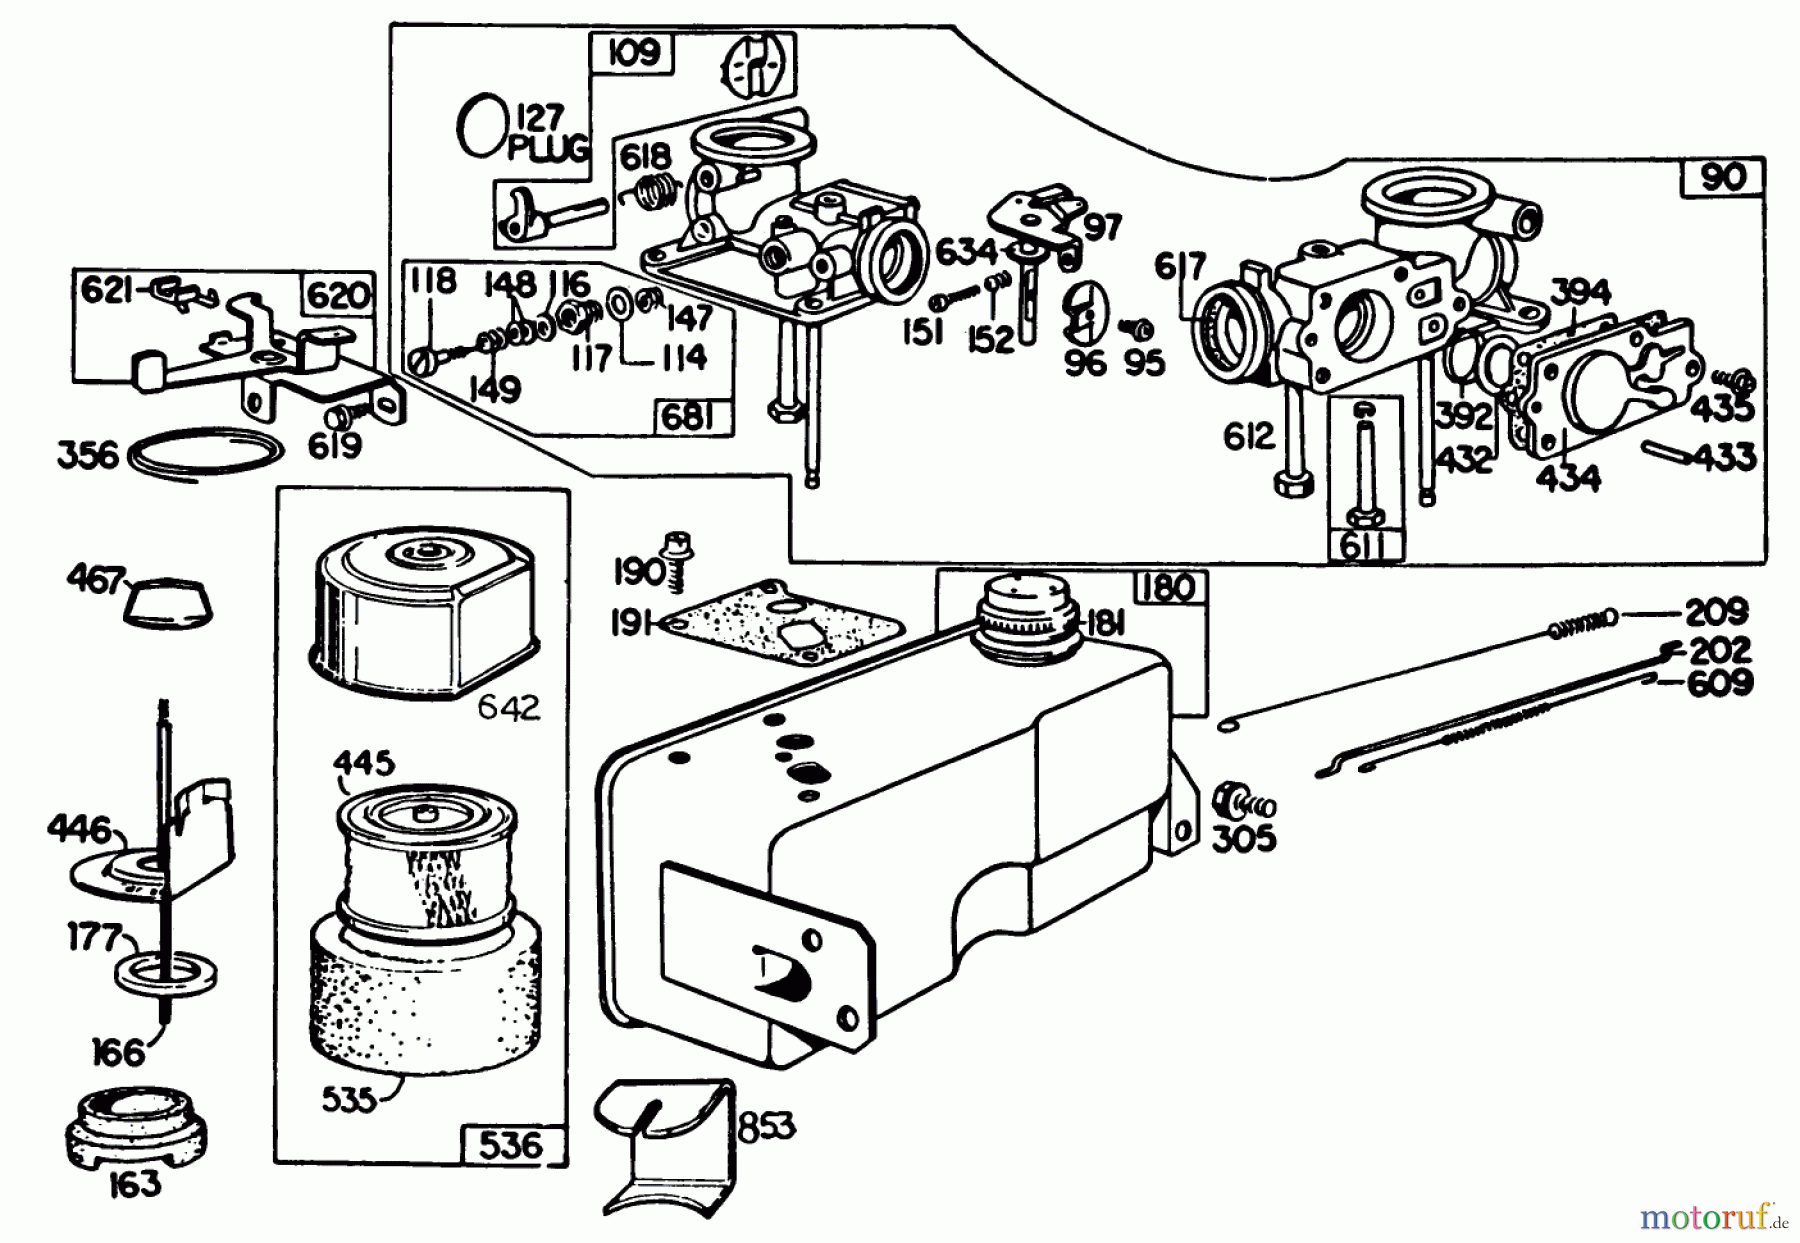  Toro Neu Mowers, Walk-Behind Seite 2 22020 - Toro Lawnmower, 1985 (5000001-5999999) ENGINE BRIGGS & STRATTON MODEL 131922-0163-01 #3